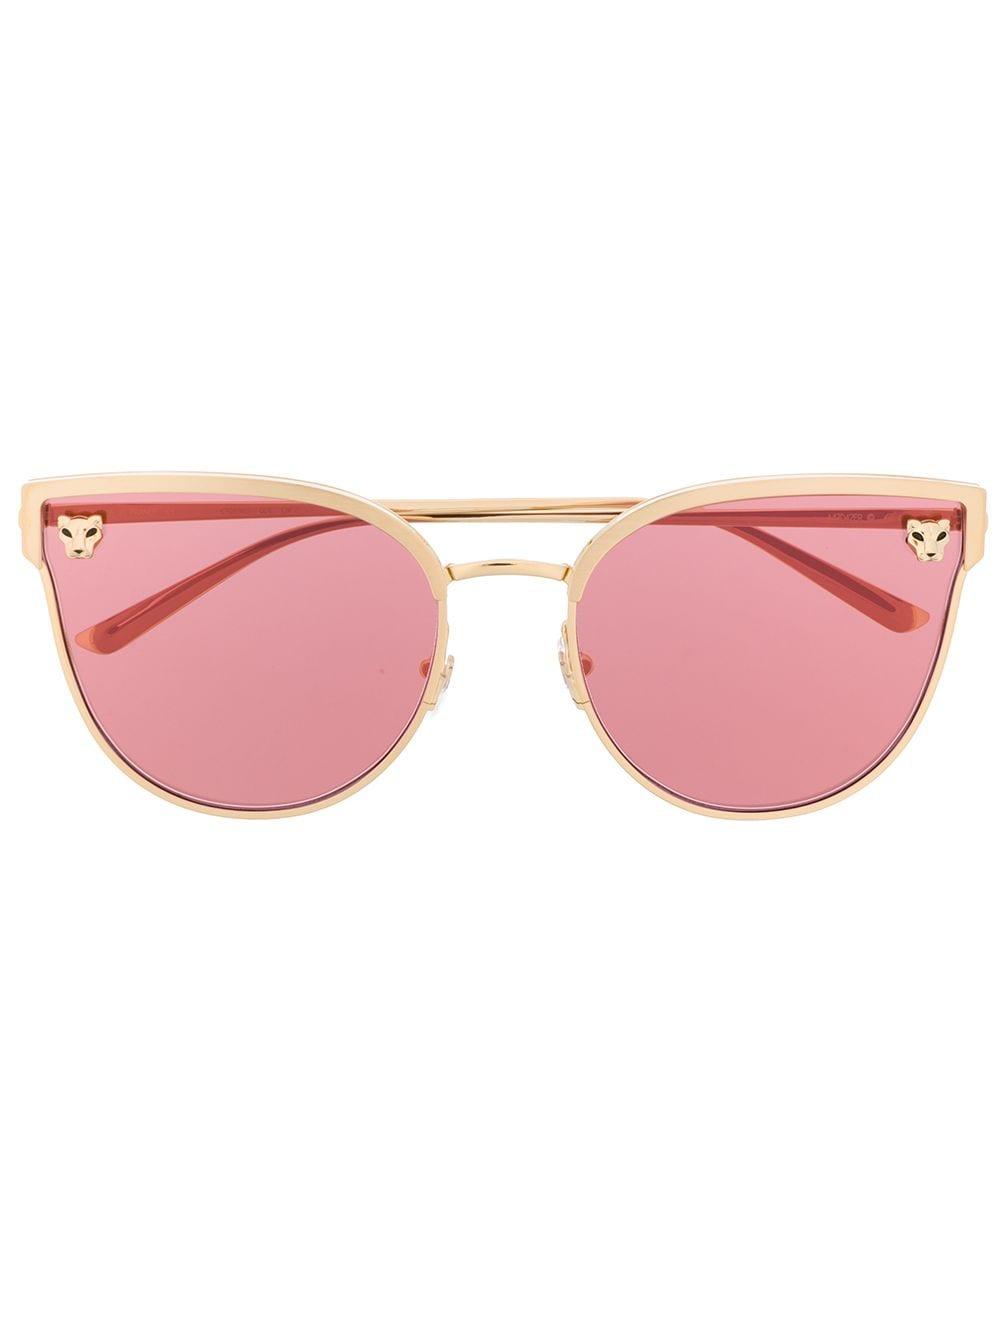 Cartier Panthère De Cartier Cat-eye Frame Sunglasses in Pink - Lyst